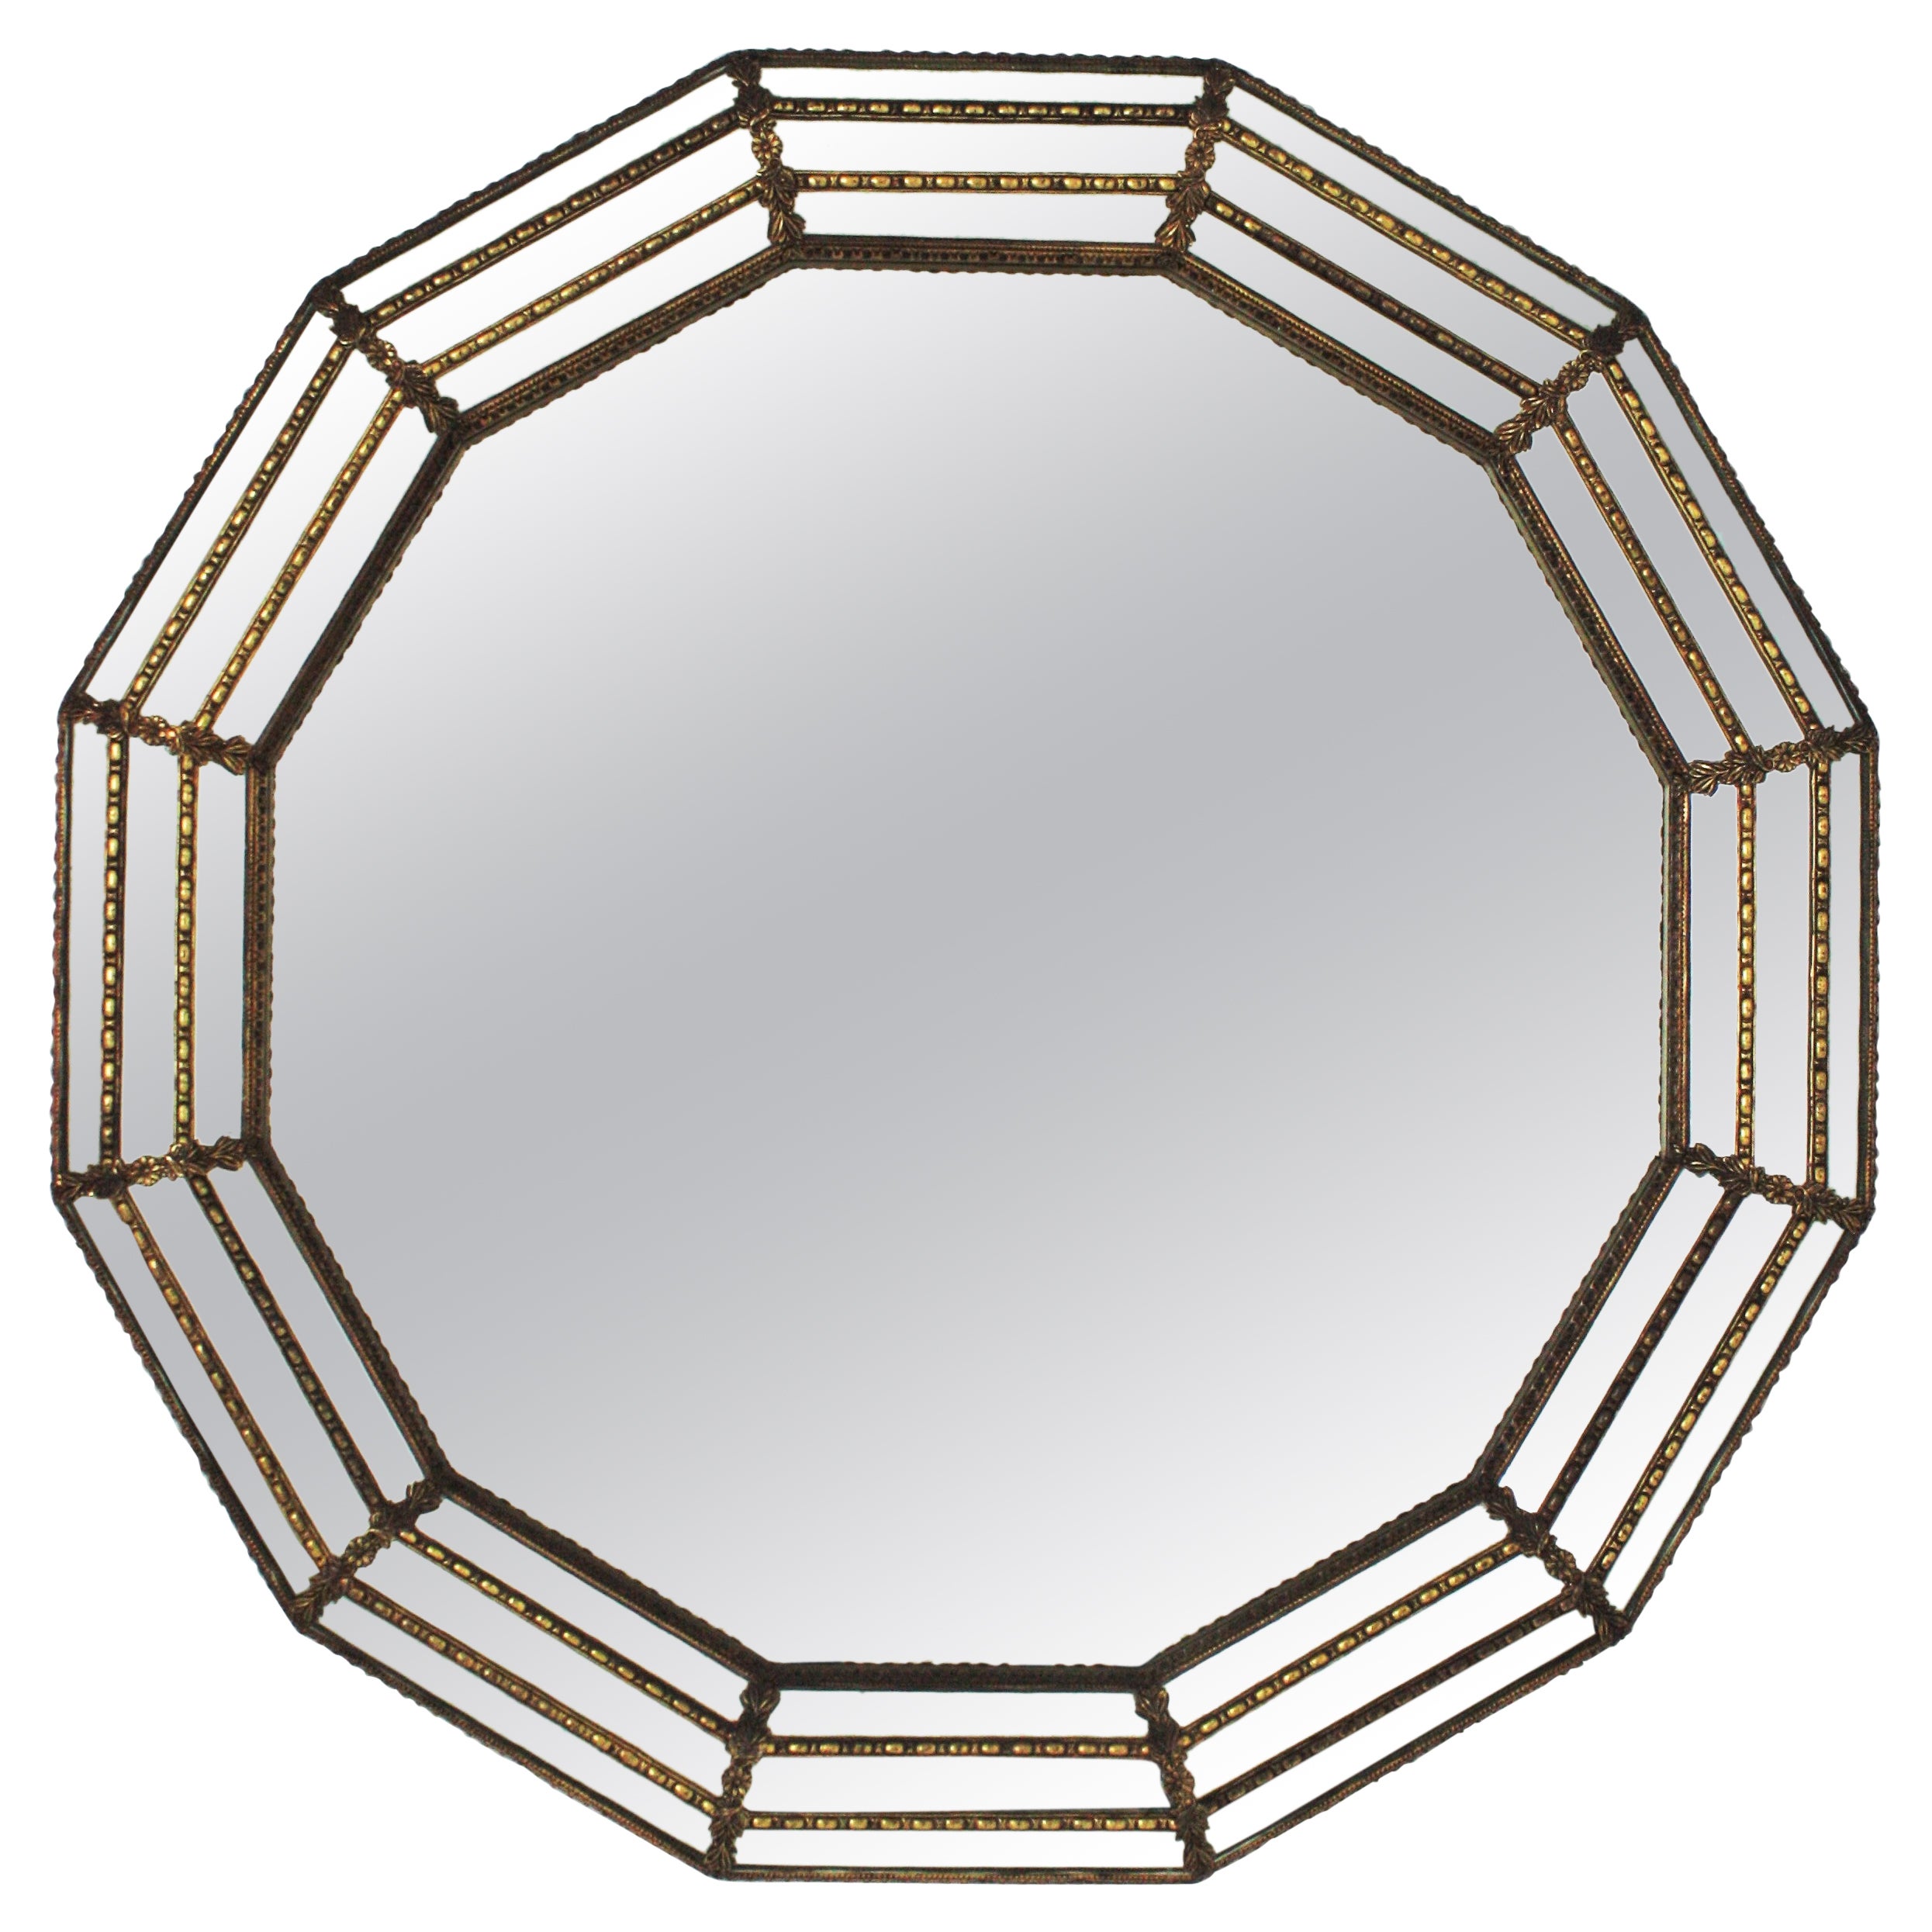 Runder venezianischer Modern-Spiegel mit Messingdetails